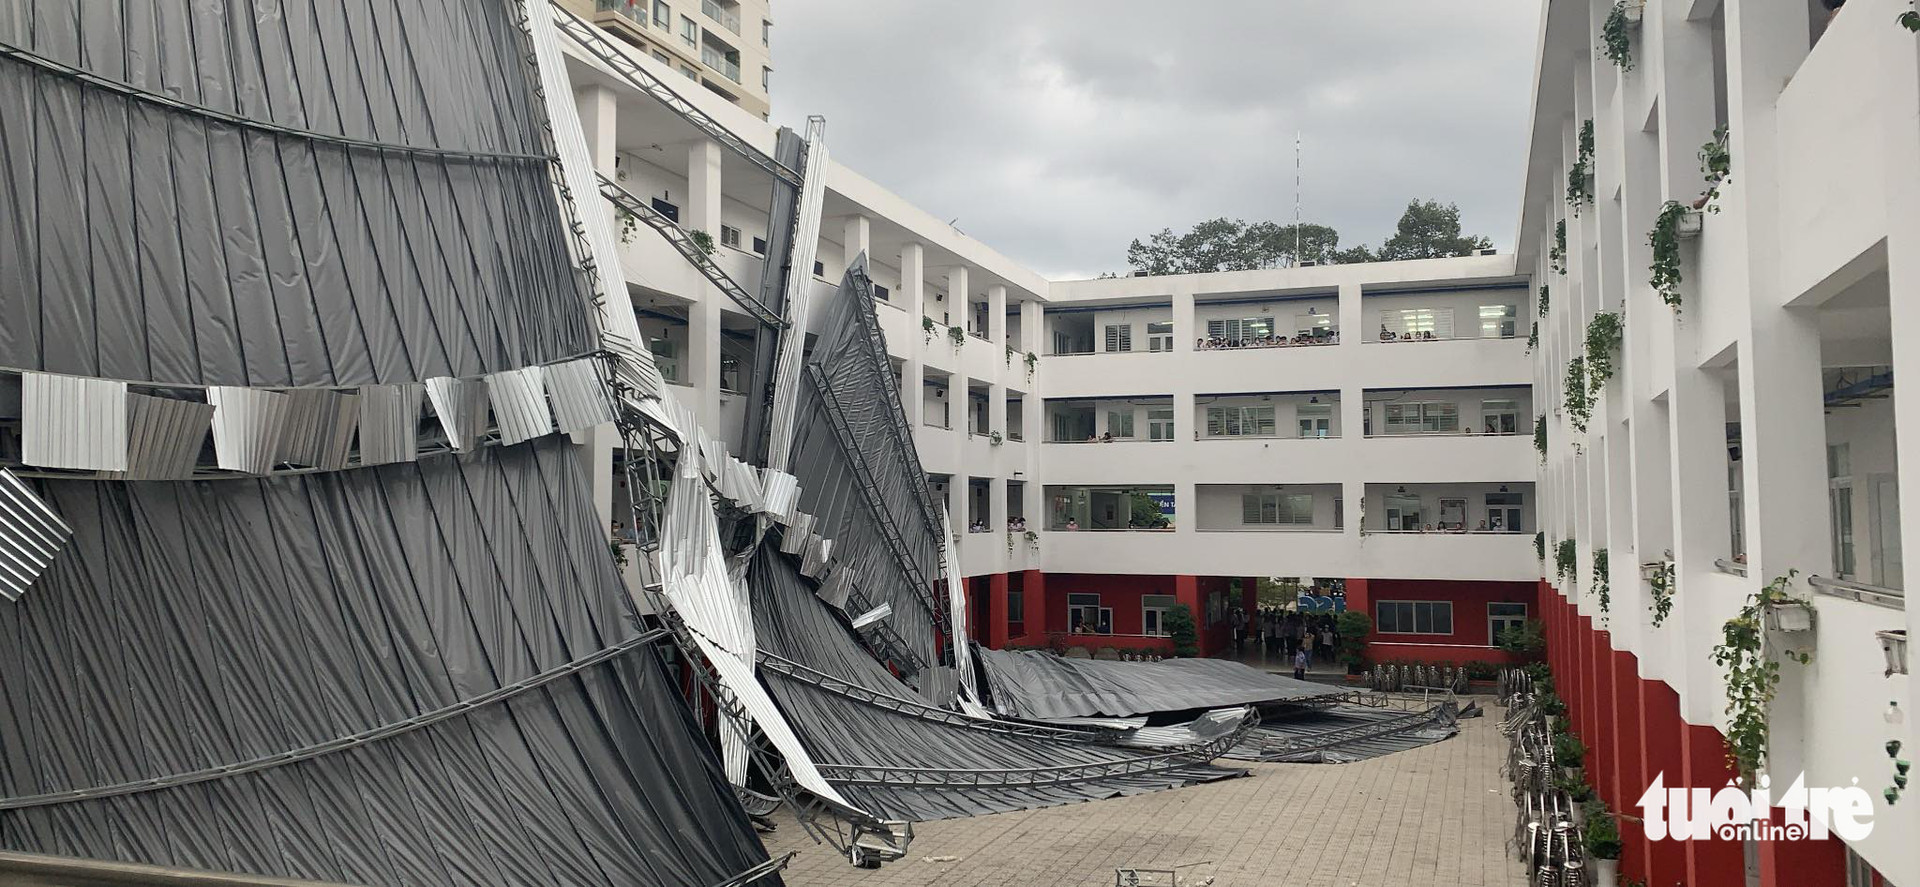 Mái che sân trường tại TP.HCM bất ngờ đổ sập, trường nói do ảnh hưởng bão Noru - Ảnh 1.